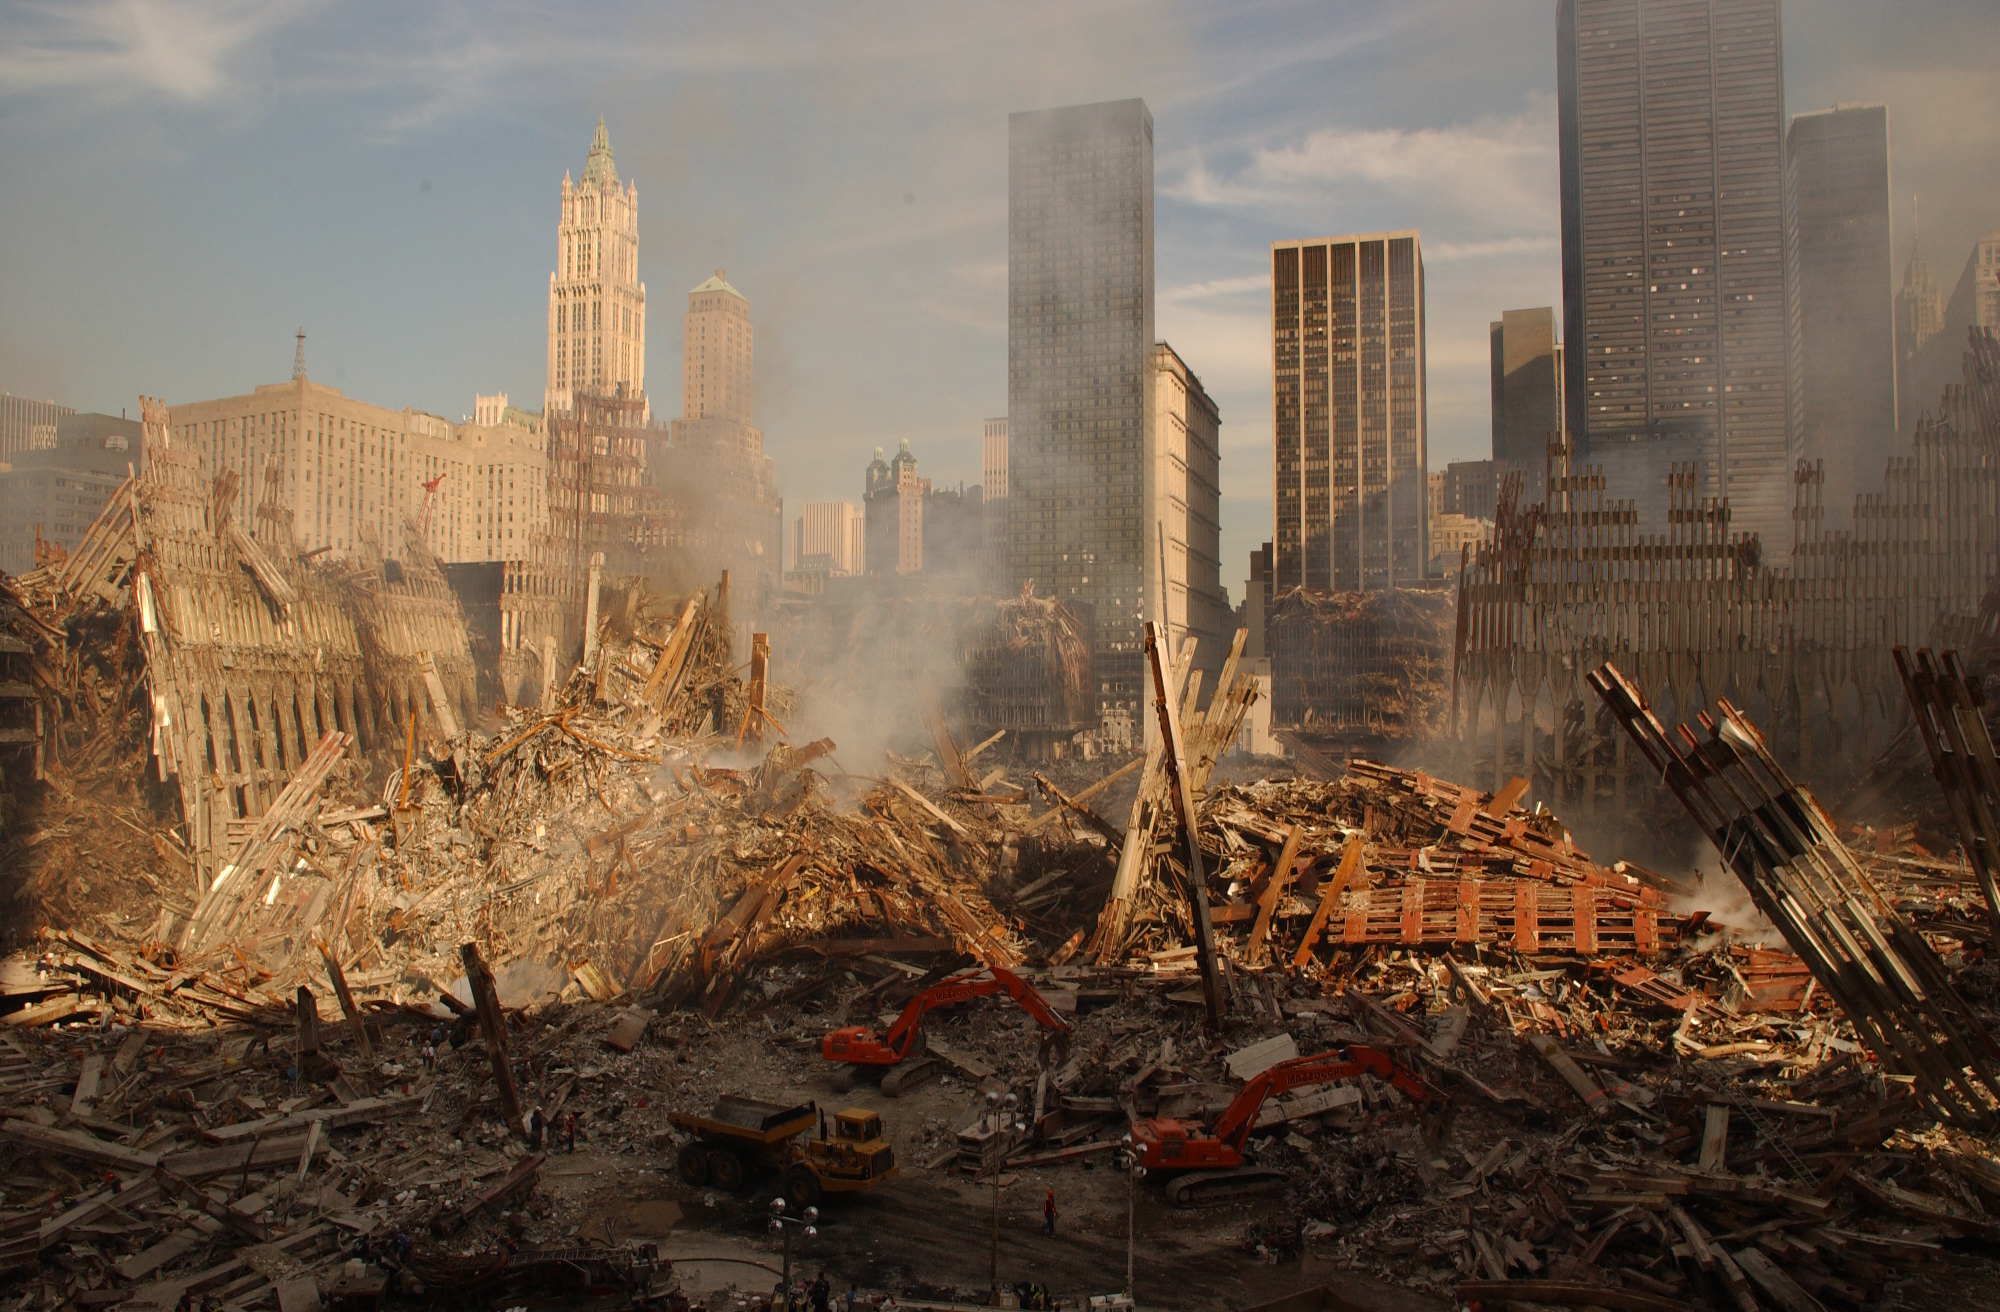 The fiasco at Ground Zero